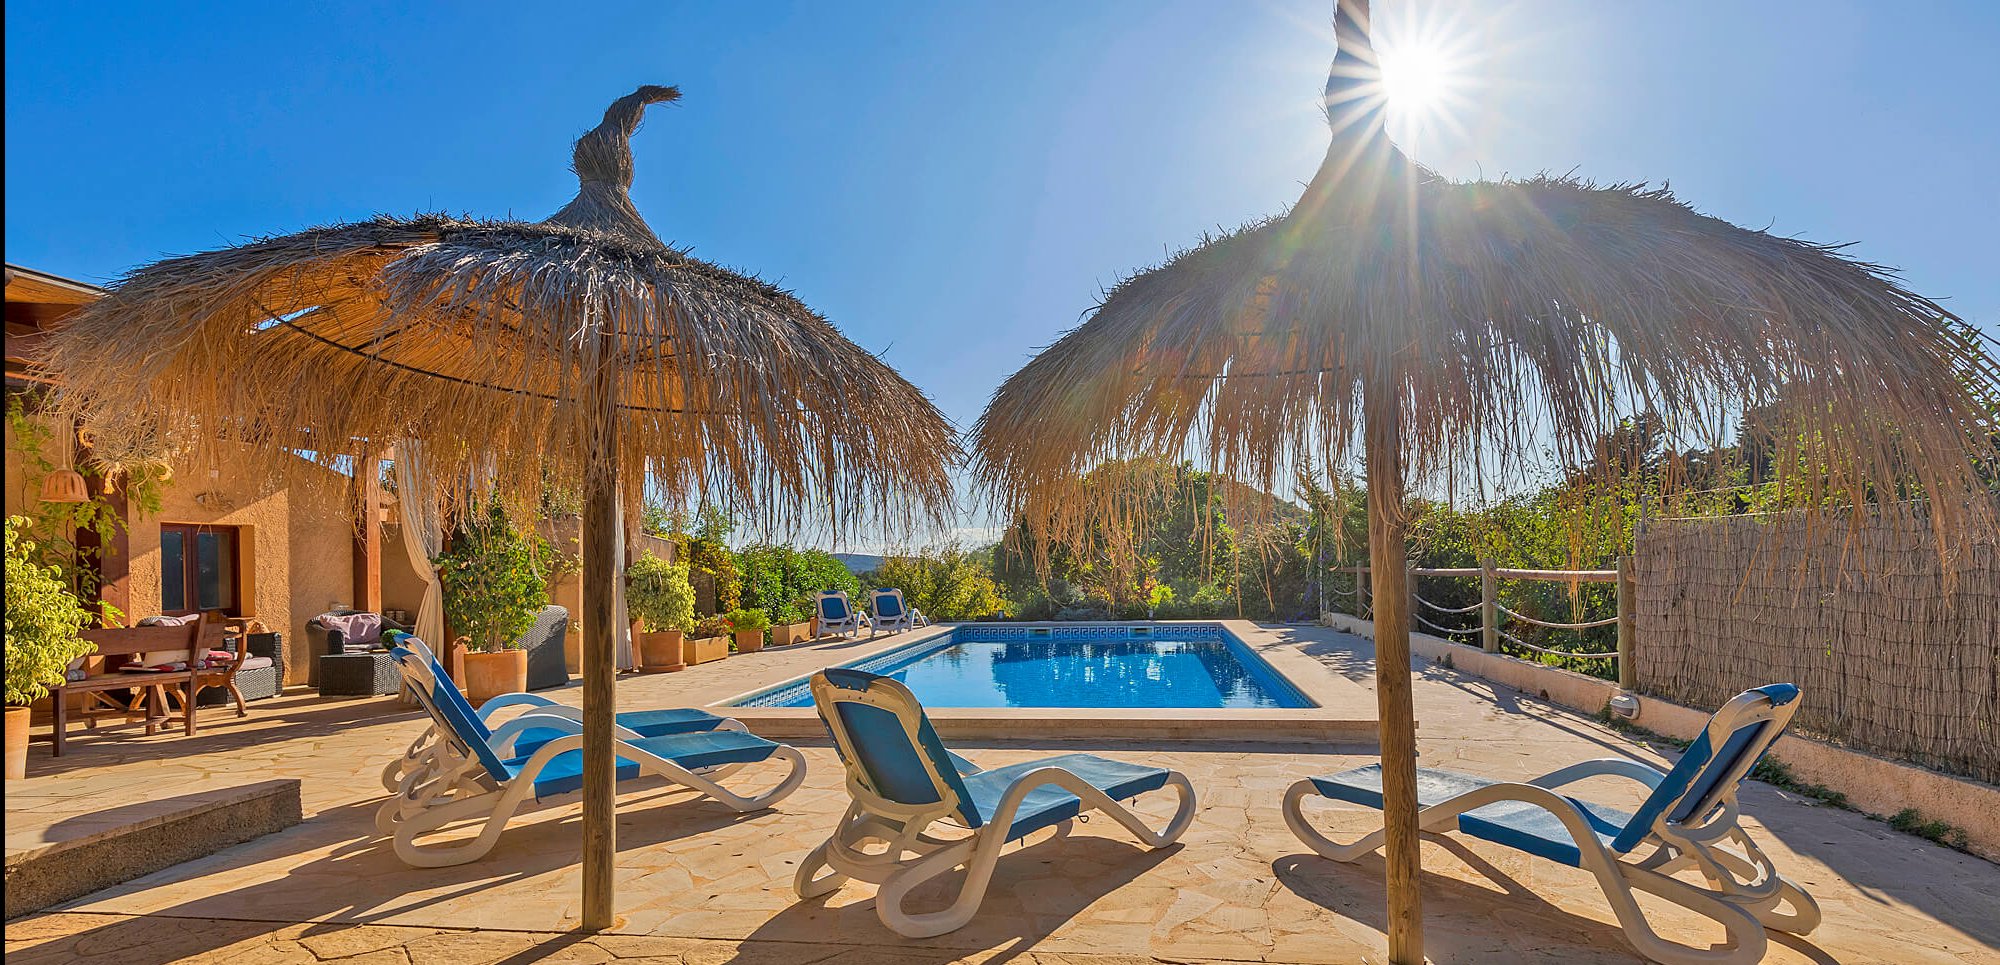 Ferienhaus Mallorca für 6 Personen mit Pool zu mieten.